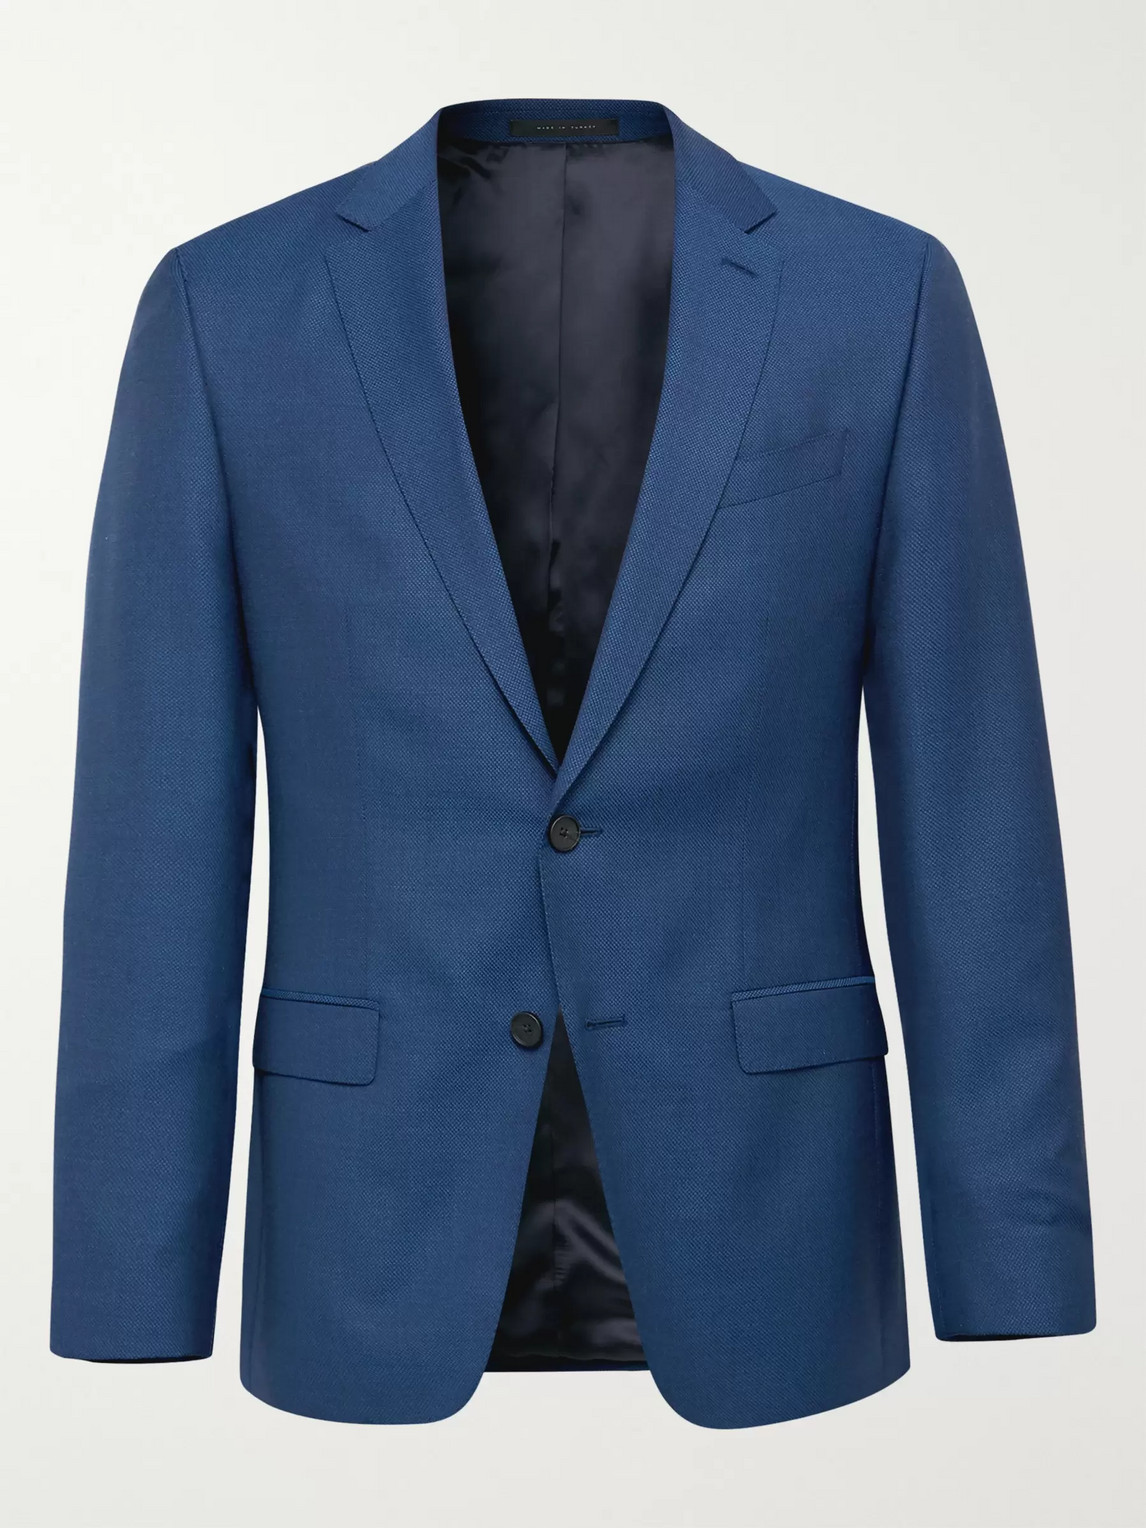 hugo boss open blue suit